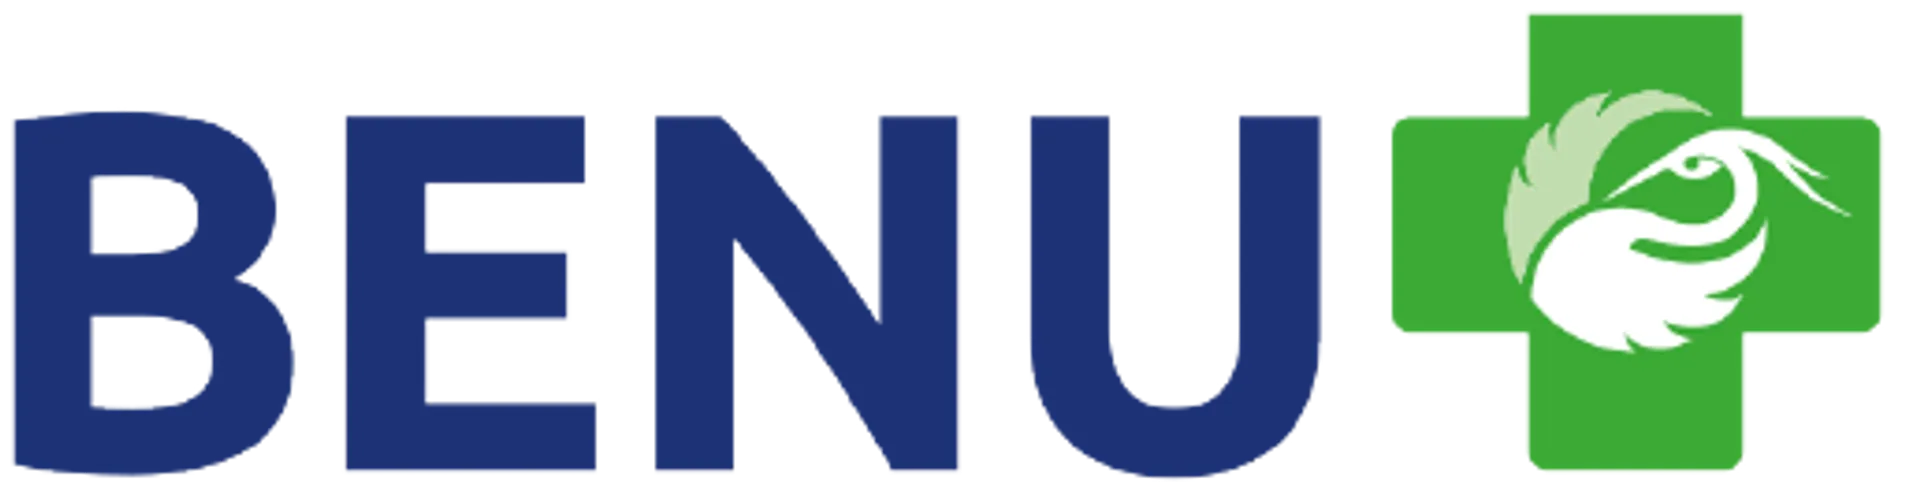 BENU logo of current catalogue